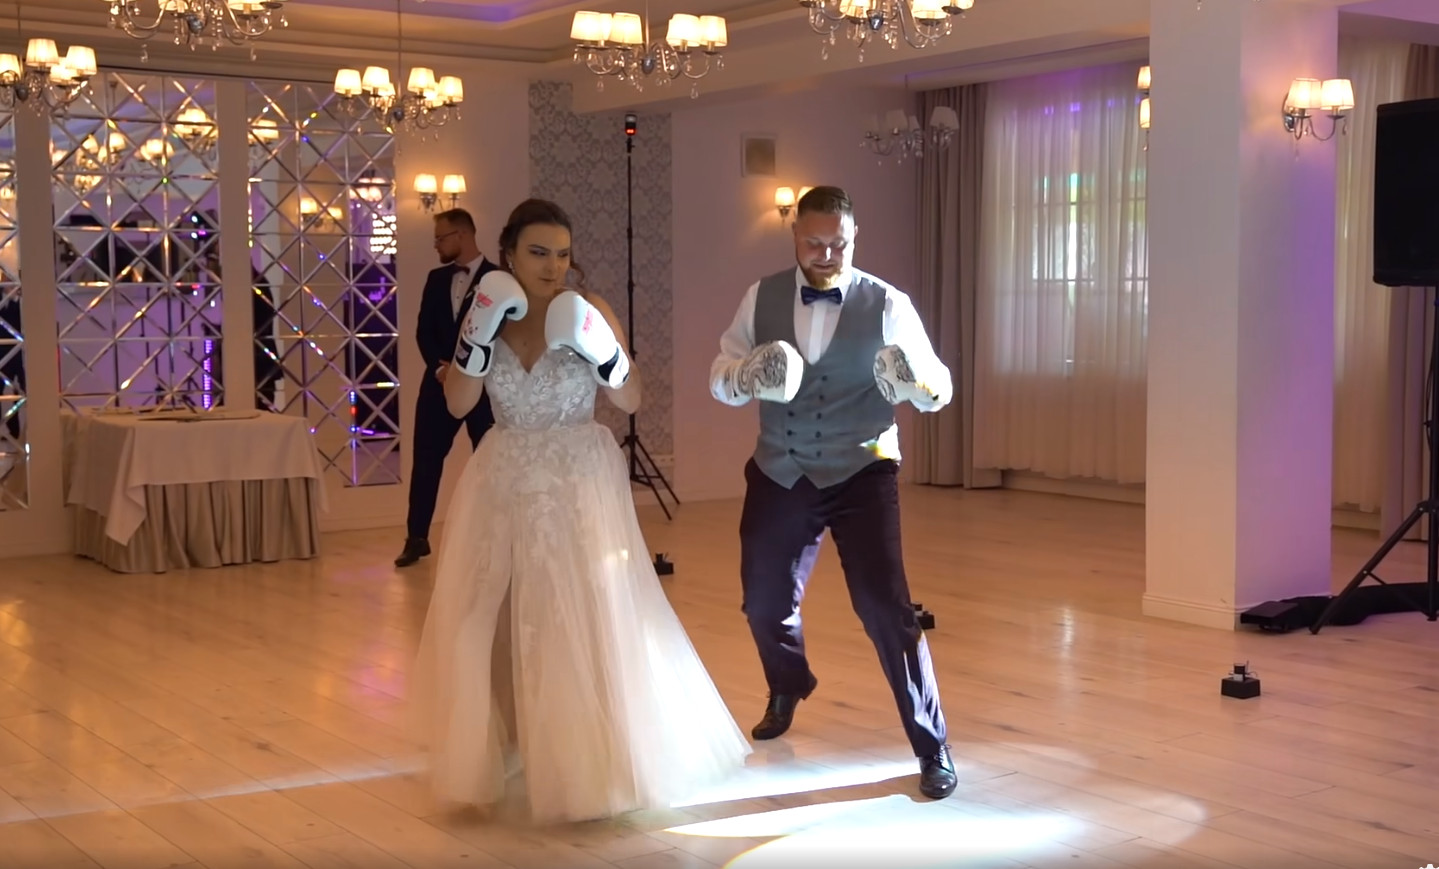 Nietypowy występ młodej pary na weselu - Walka zamiast tańca! | VIDEO